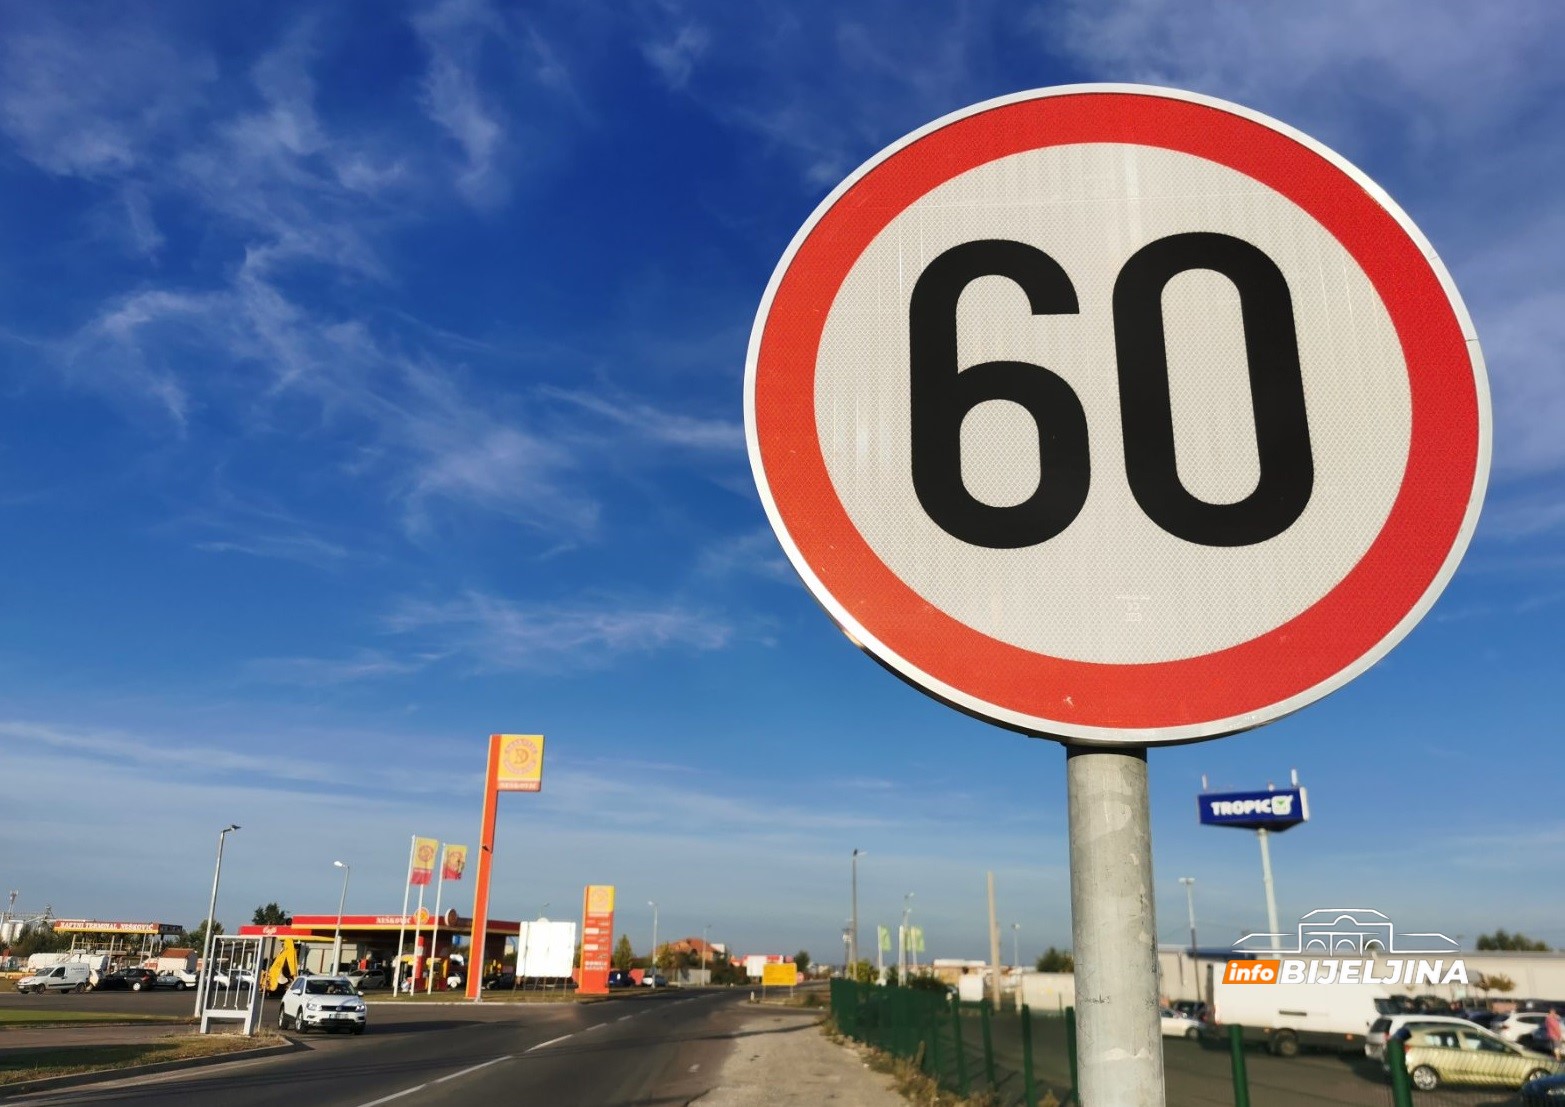 Potvrđeno za InfoBijeljina: Ko je odlučio da ograničenje na Pavlović putu bude smanjeno sa 80 na 60 km/h